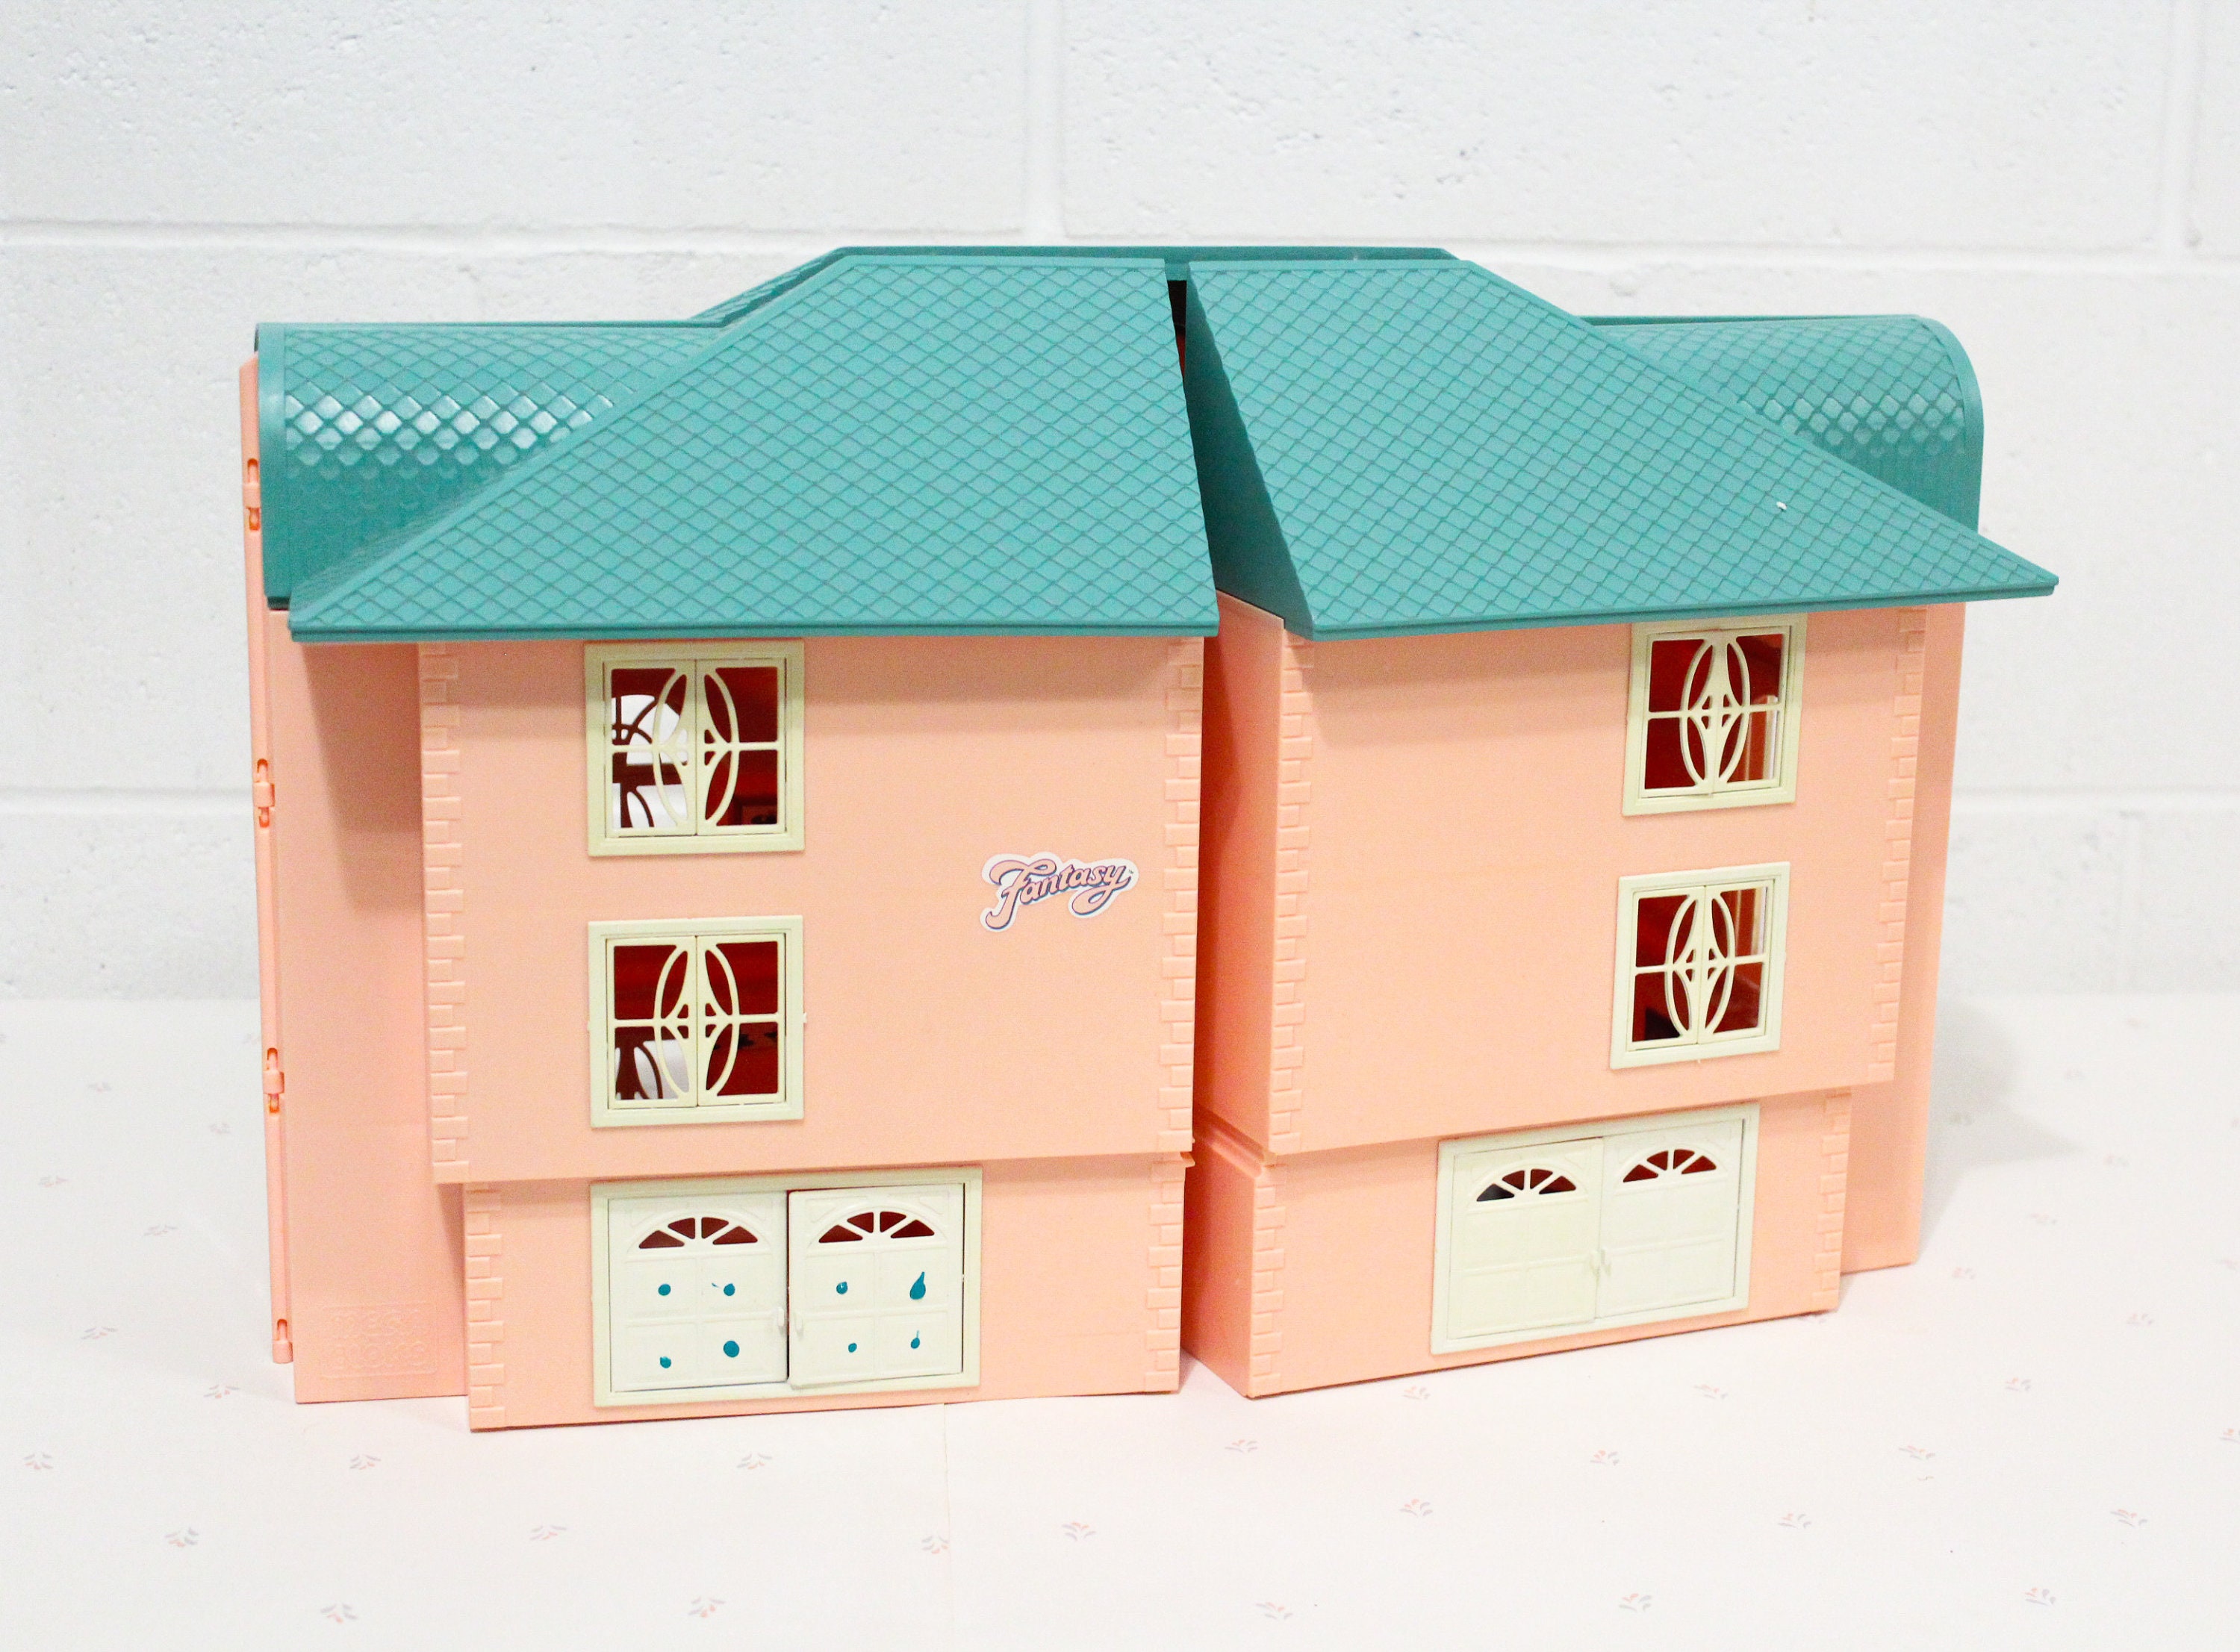 Pilgrim Regenerativ Farvel Mega Bloks Fantasy House Dream Home Rare Toy for Kid - Etsy UK